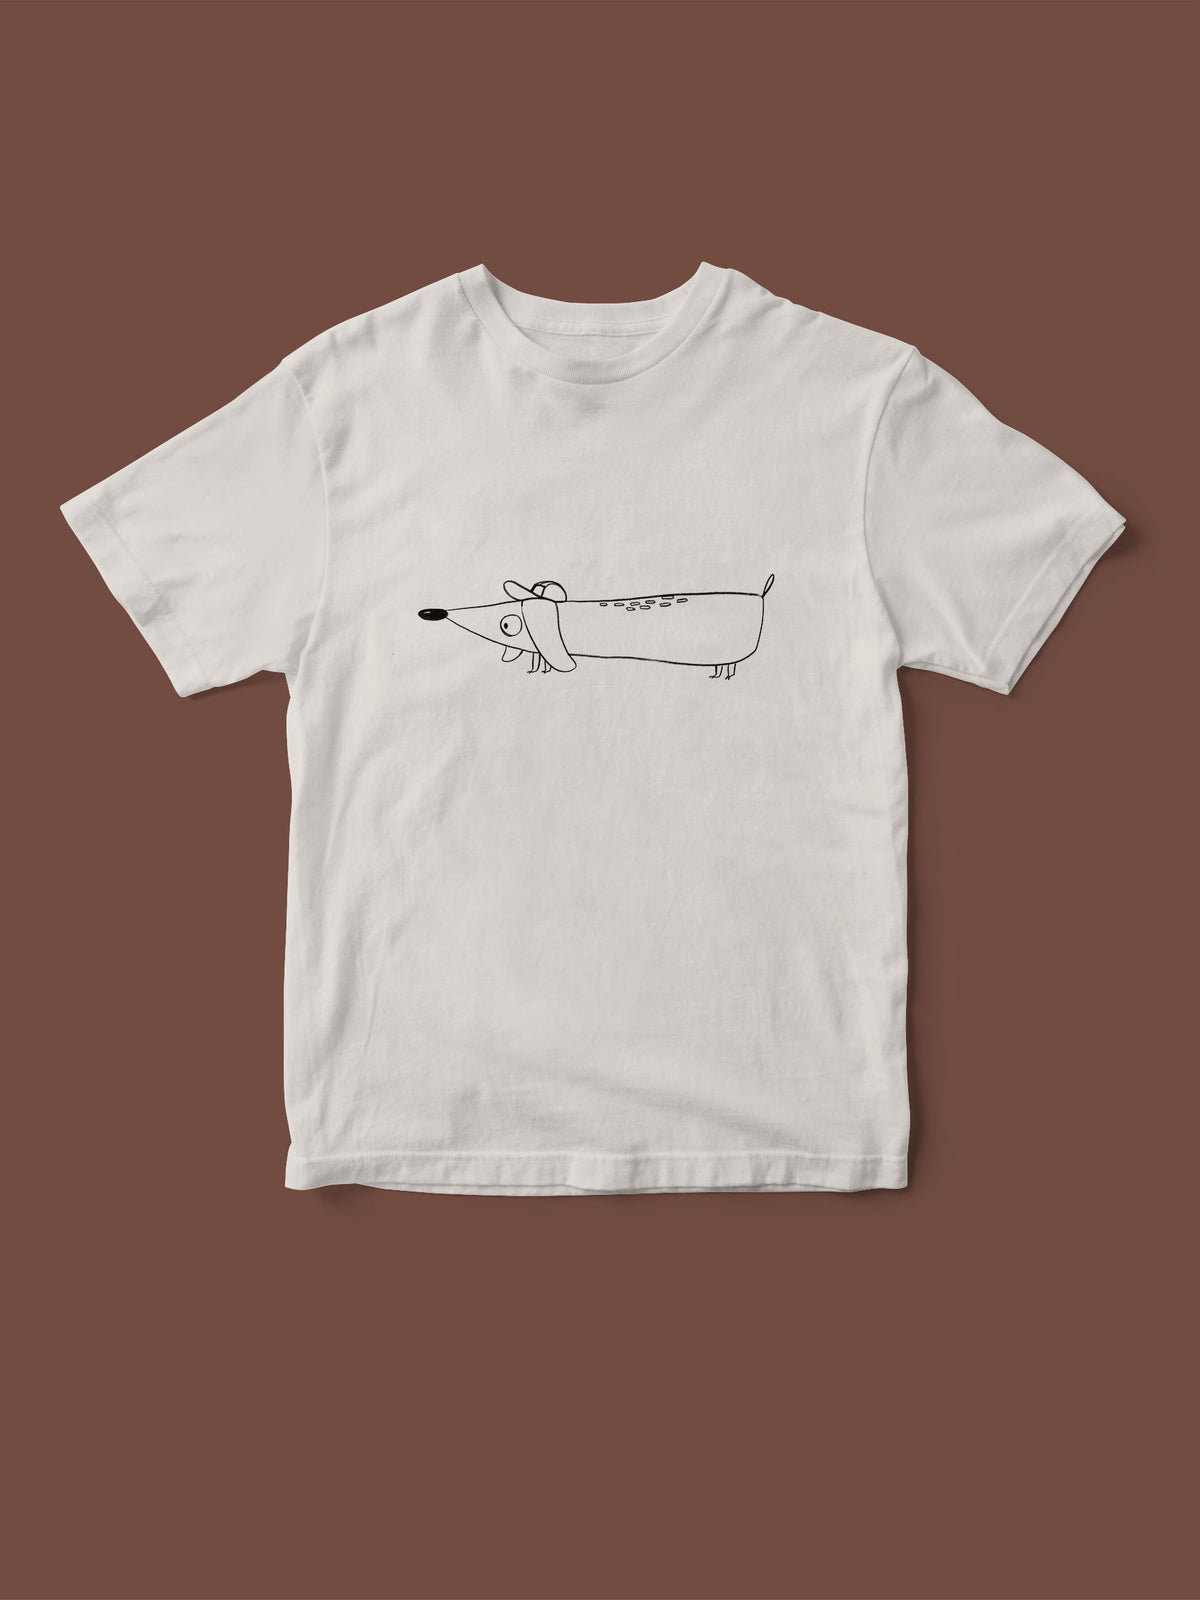 Kinder T-Shirt mit Dackel Detlef Siebdruck Transfer bedruckt von halfbird. Das T-shirt ist weiß, der Druck schwarz